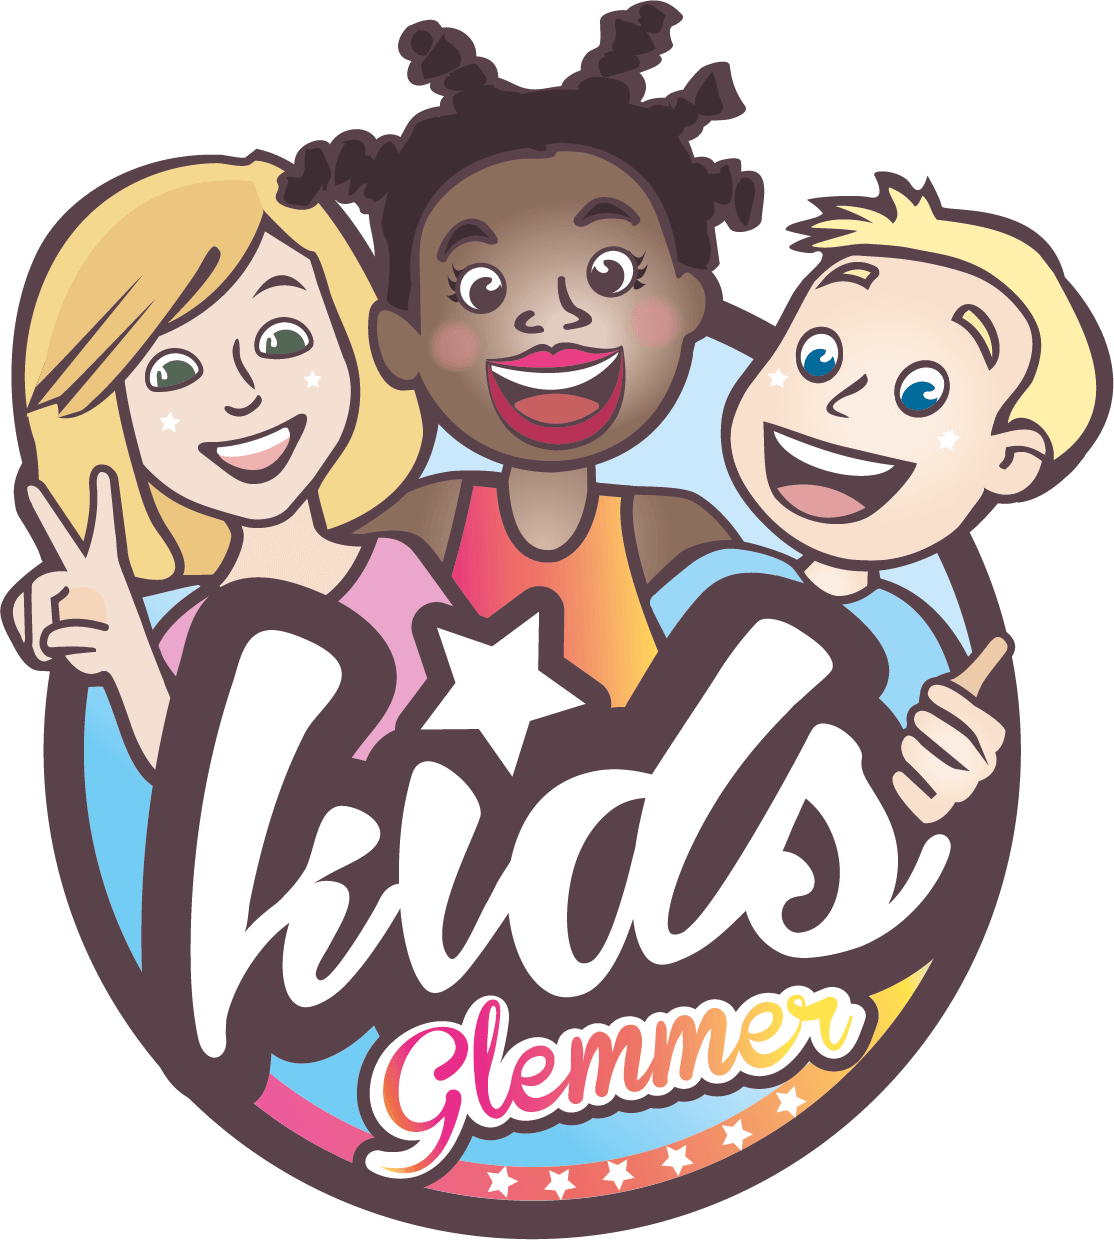 Kids Glemmer festival logo